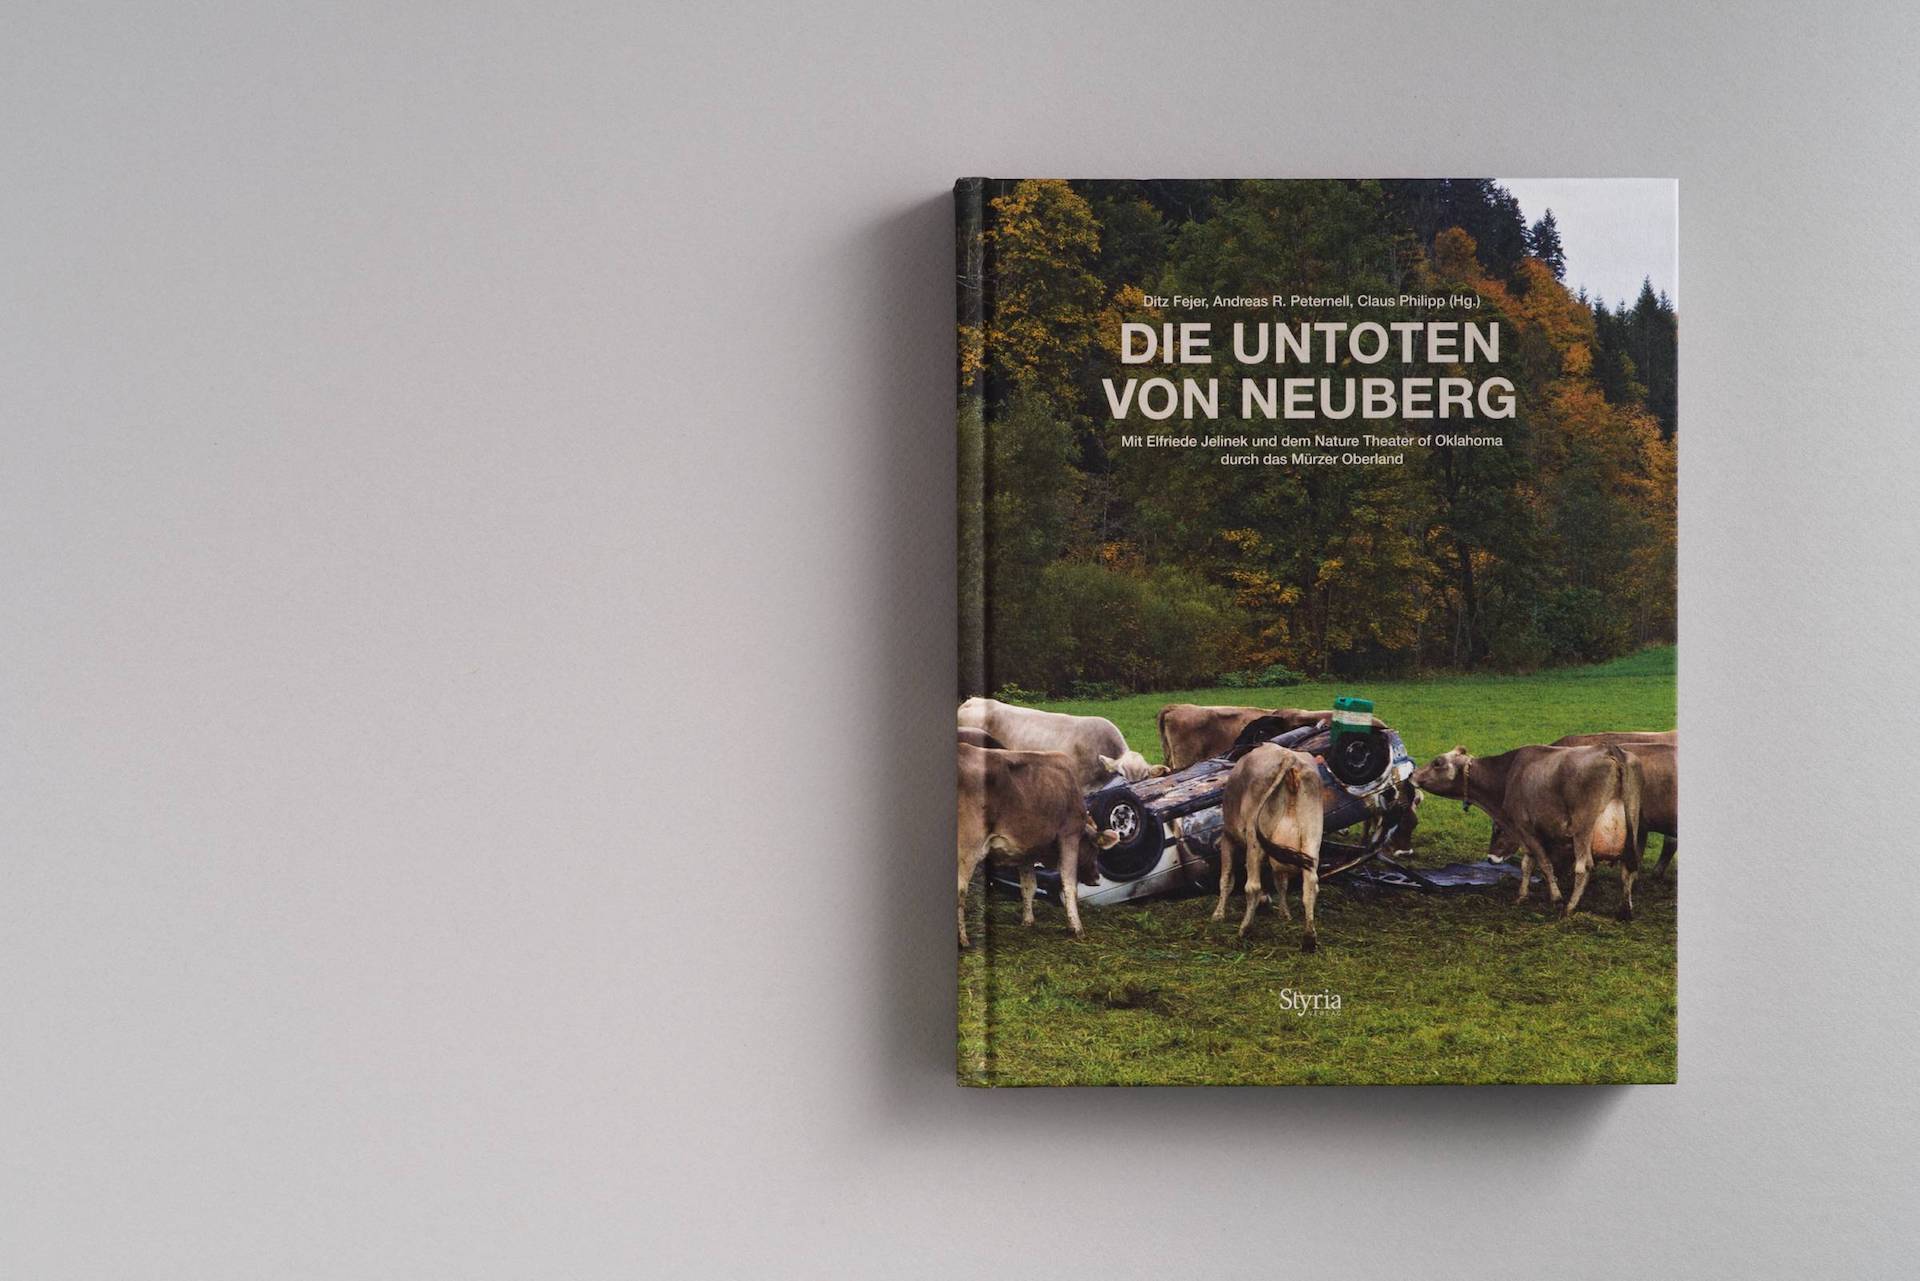 Referenz Publikation TRAFO: Die Untoten von Neuberg, Styria Verlag © Arlene Jobbes